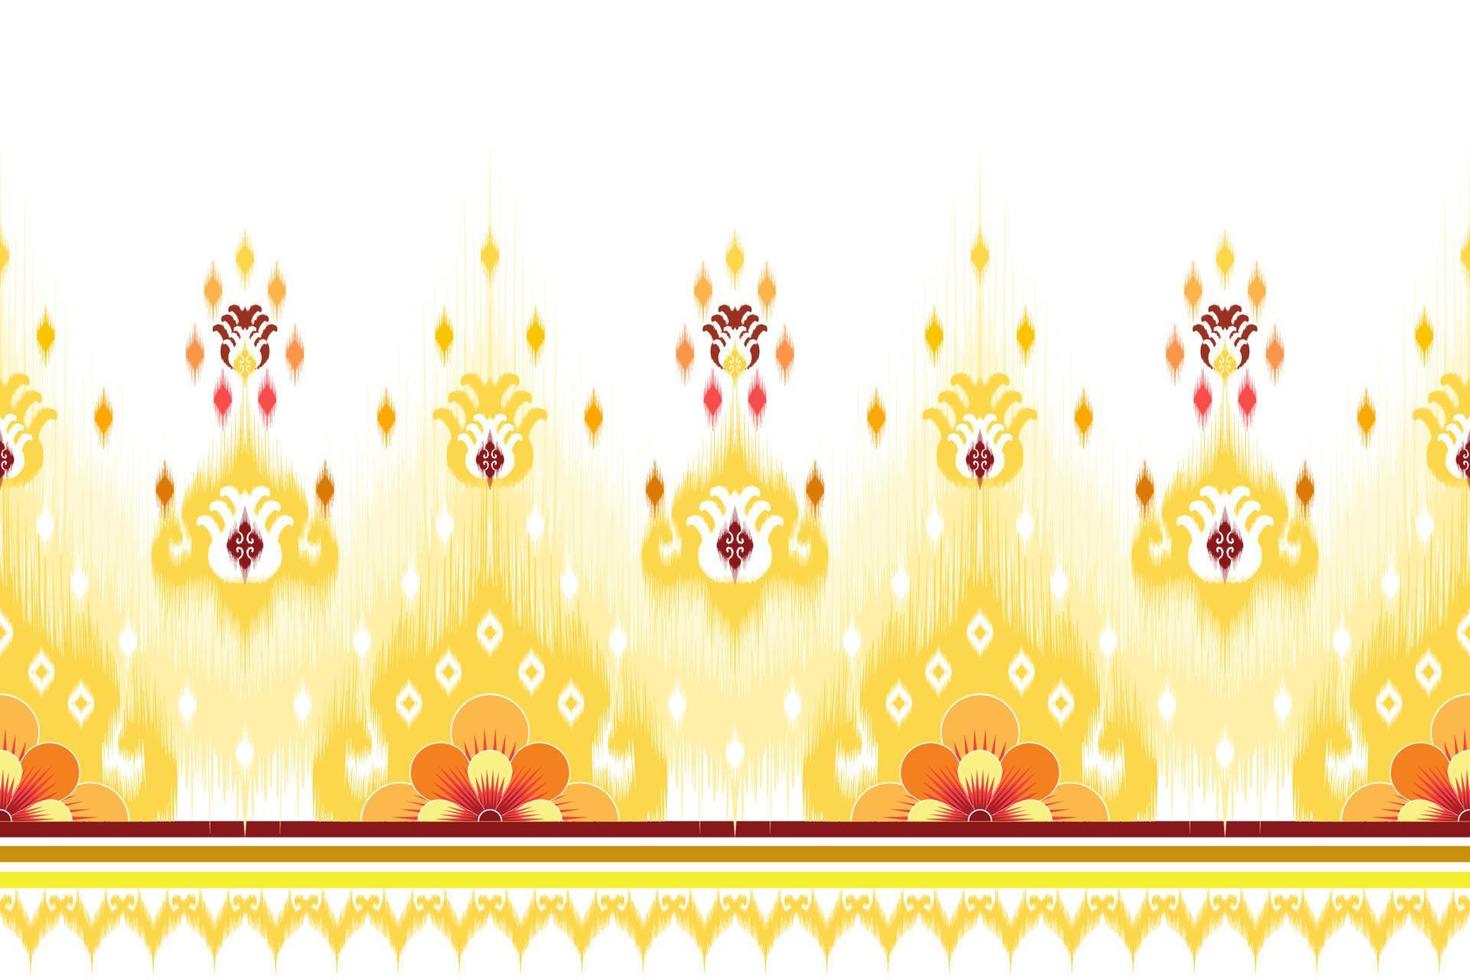 ikat etnisch naadloos patroonontwerp. Azteekse stof tapijt mandala ornament chevron textiel decoratie behang. tribal turkije afrikaanse indische traditionele borduurwerk vector illustraties achtergrond